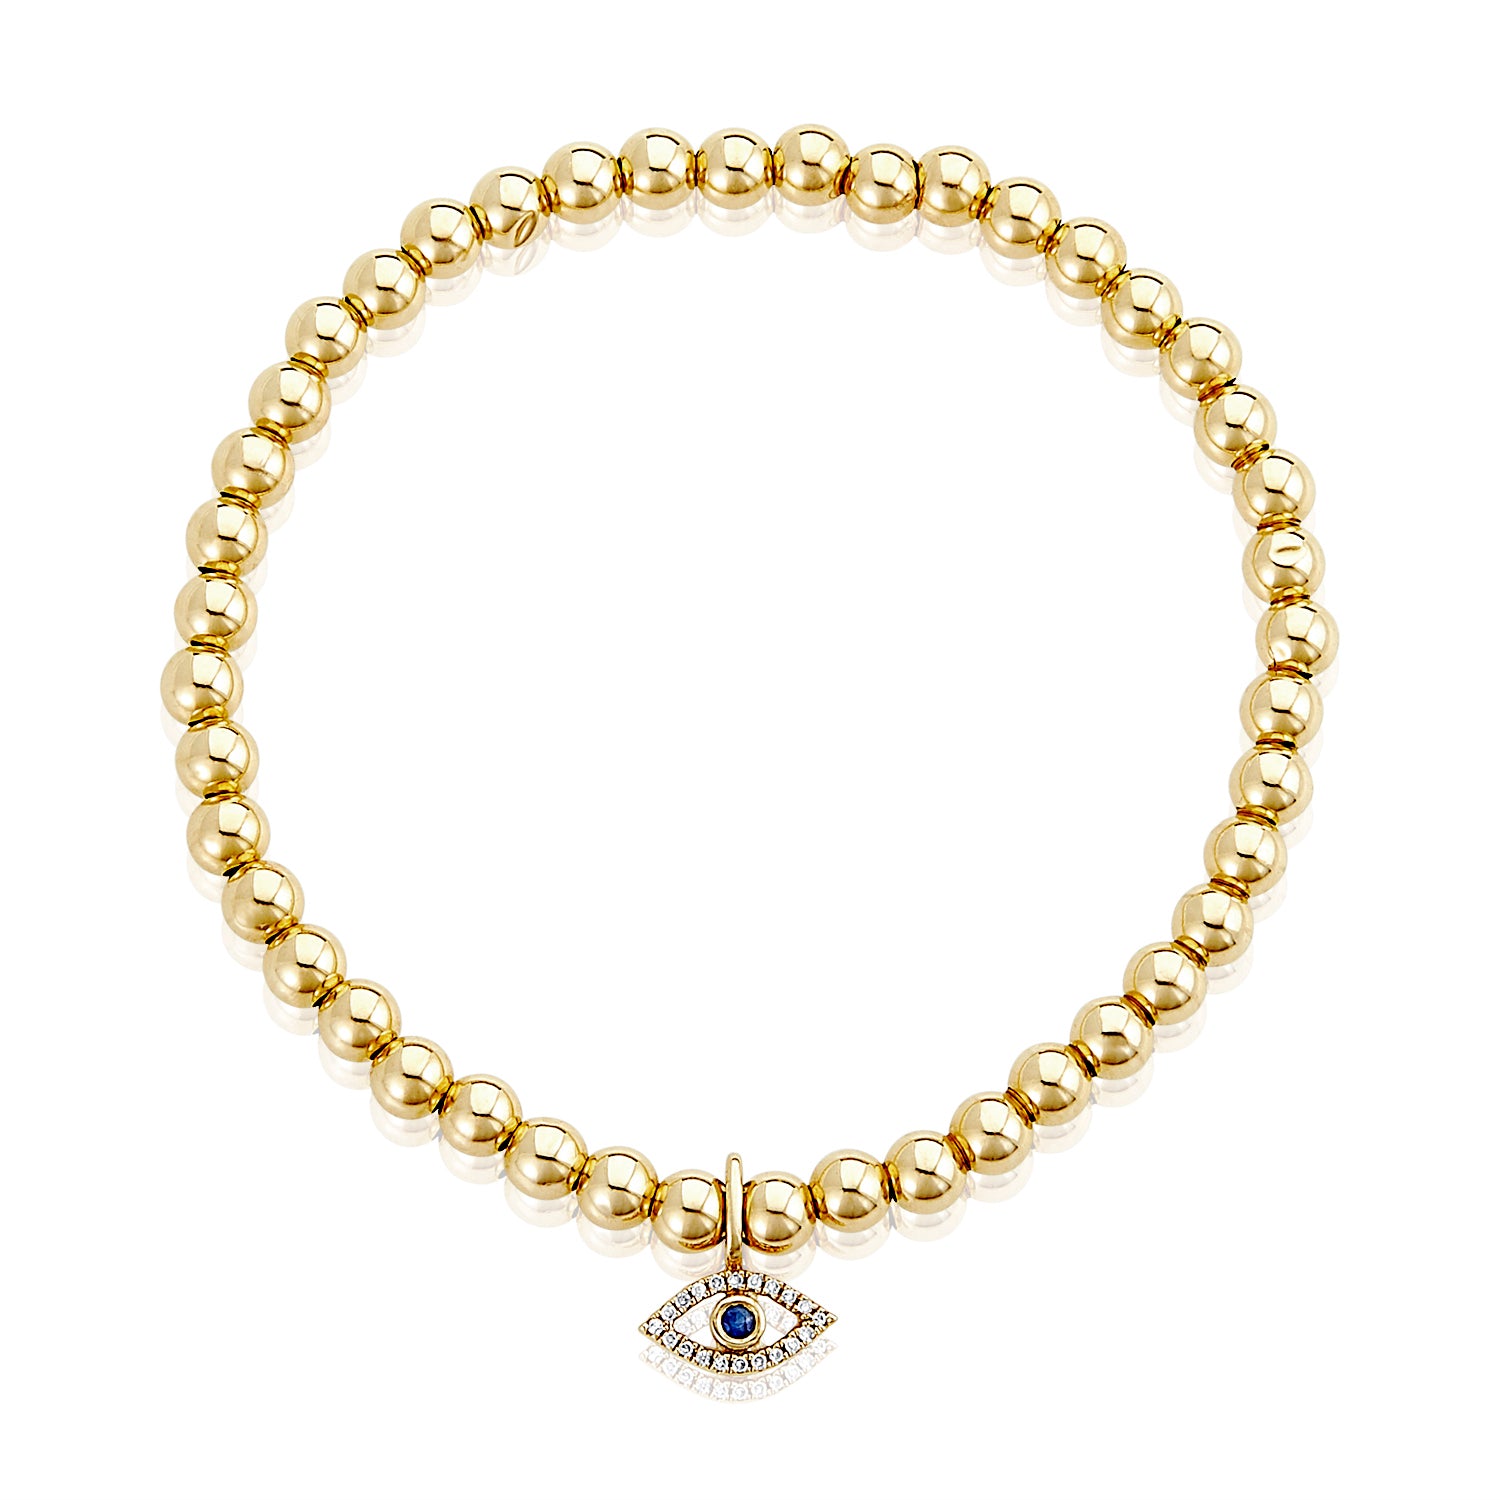 Gold Bracelet (1.83 gm), 14 KT Plain Yellow Gold Jewellery - Chic Evil Eye Gold Bracelet for Women. Length 7.25 inch.